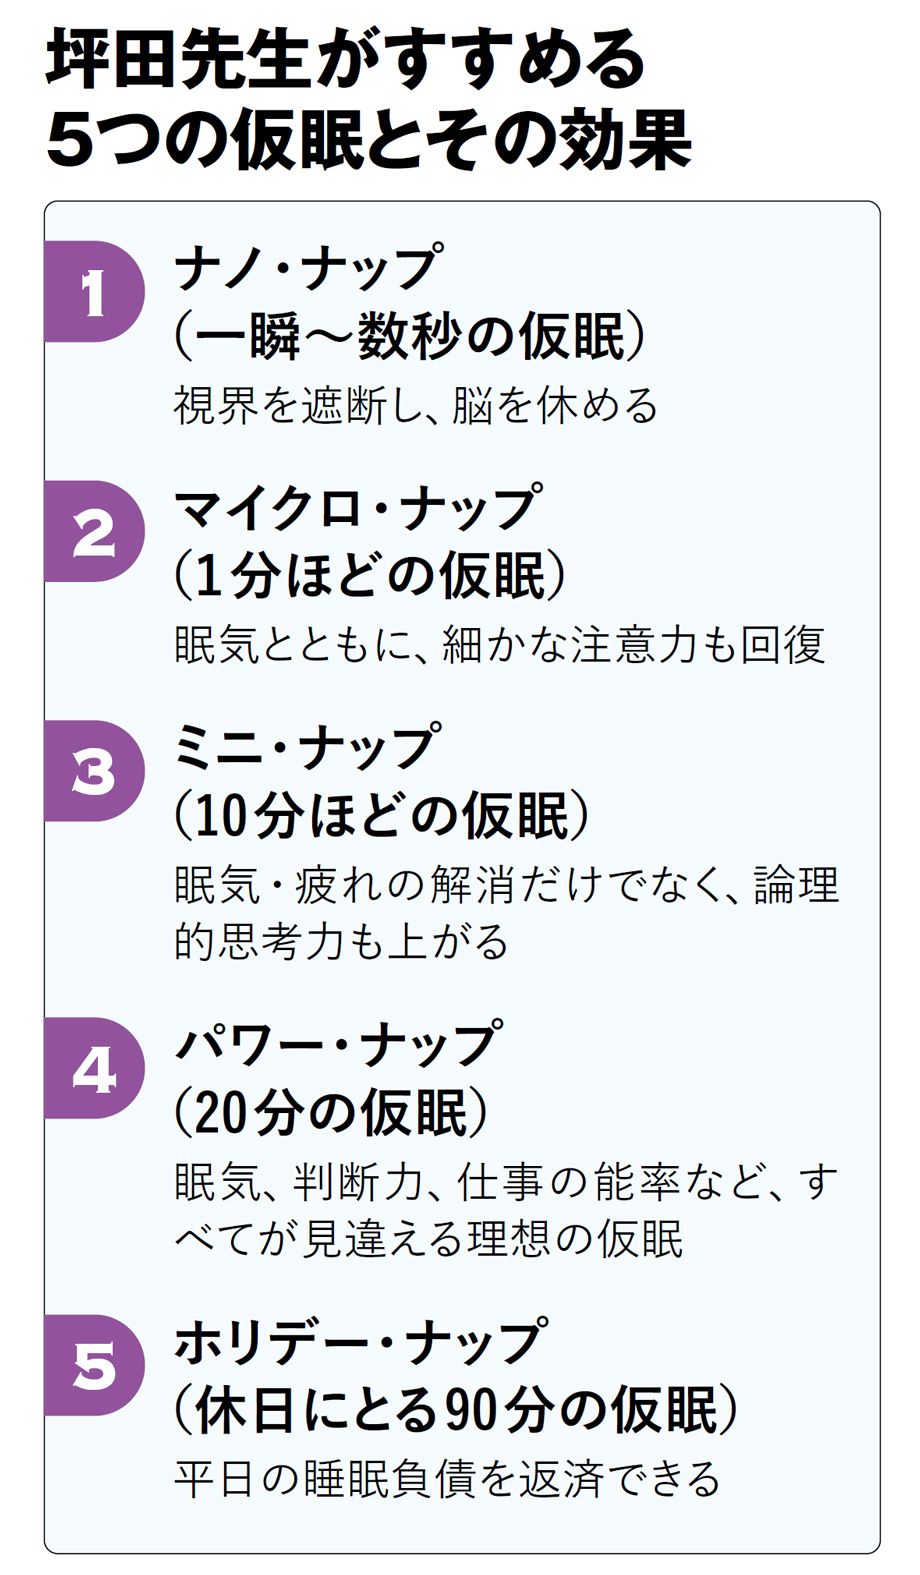 【図表】坪田先生がすすめる5つの仮眠とその効果